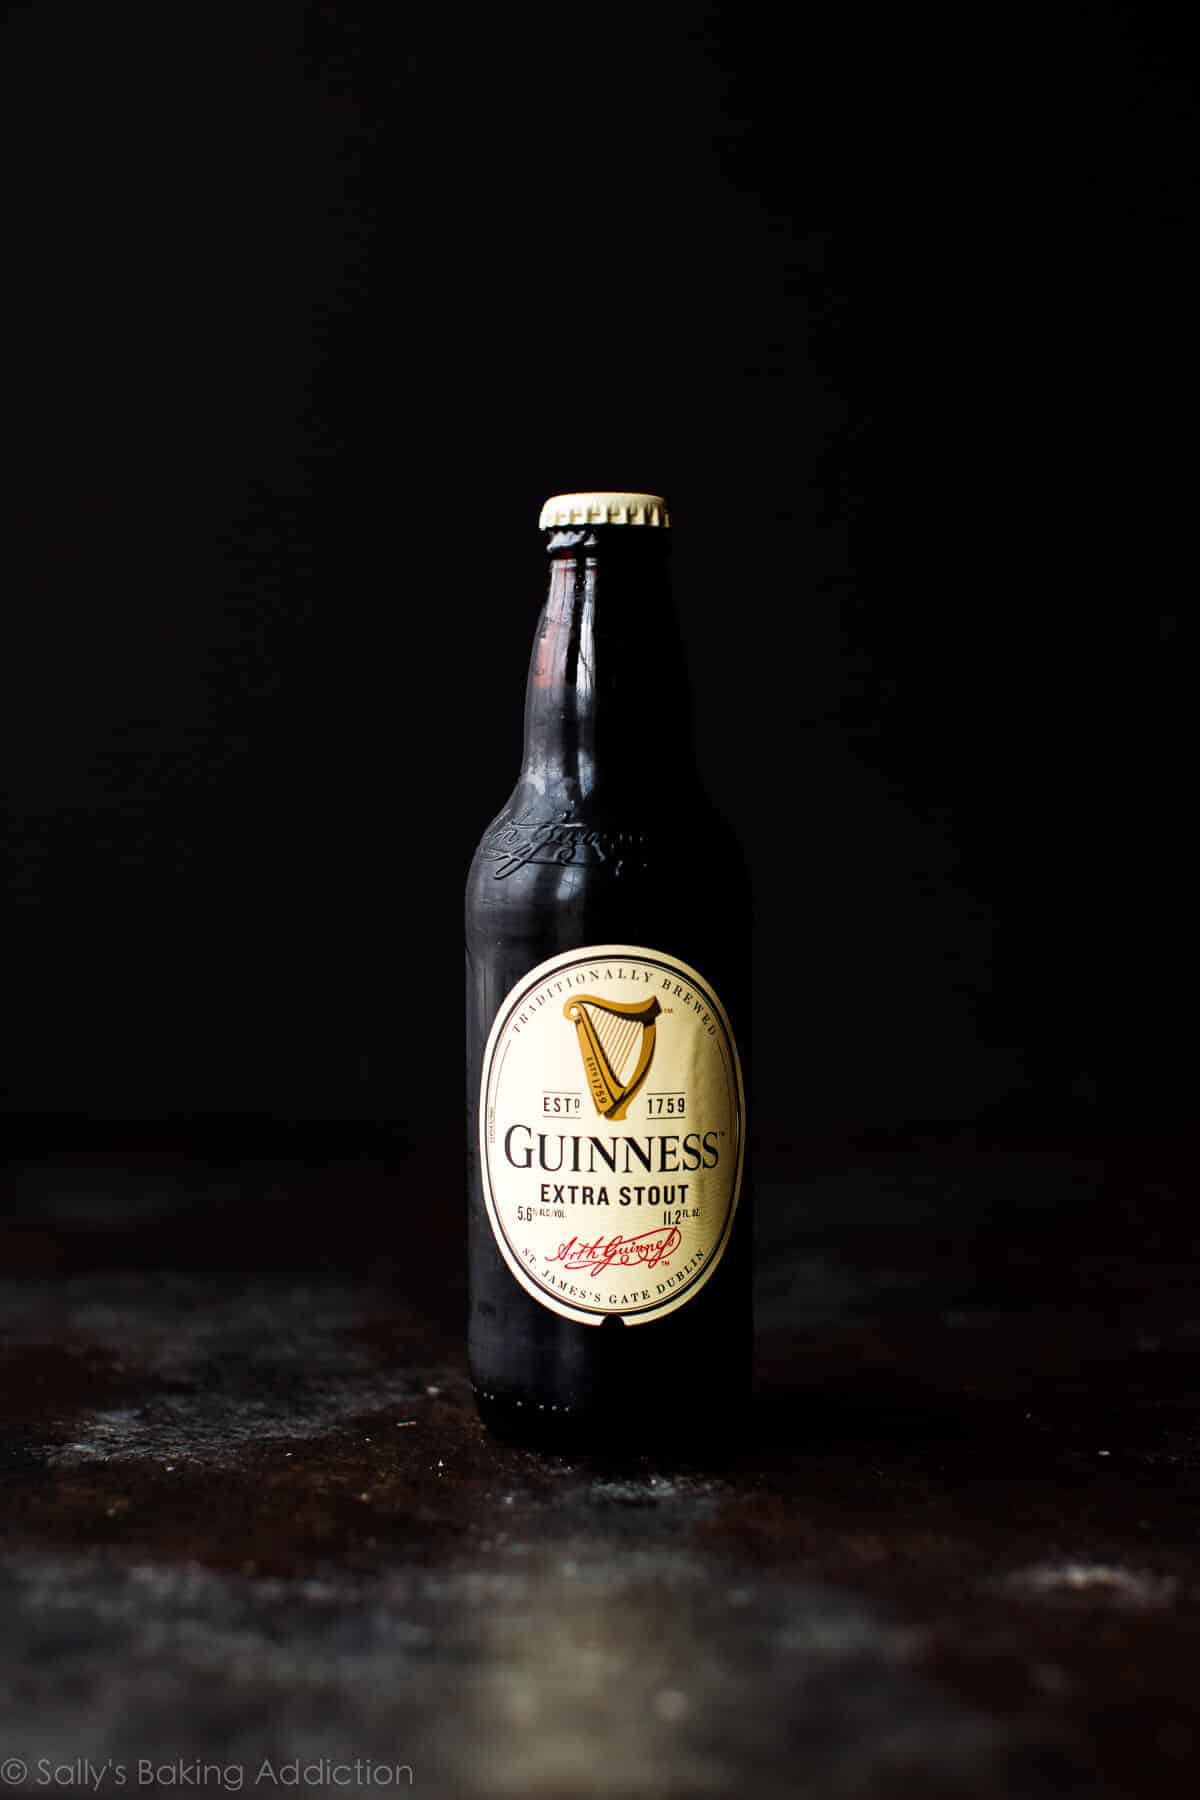 Guinness beer bottle